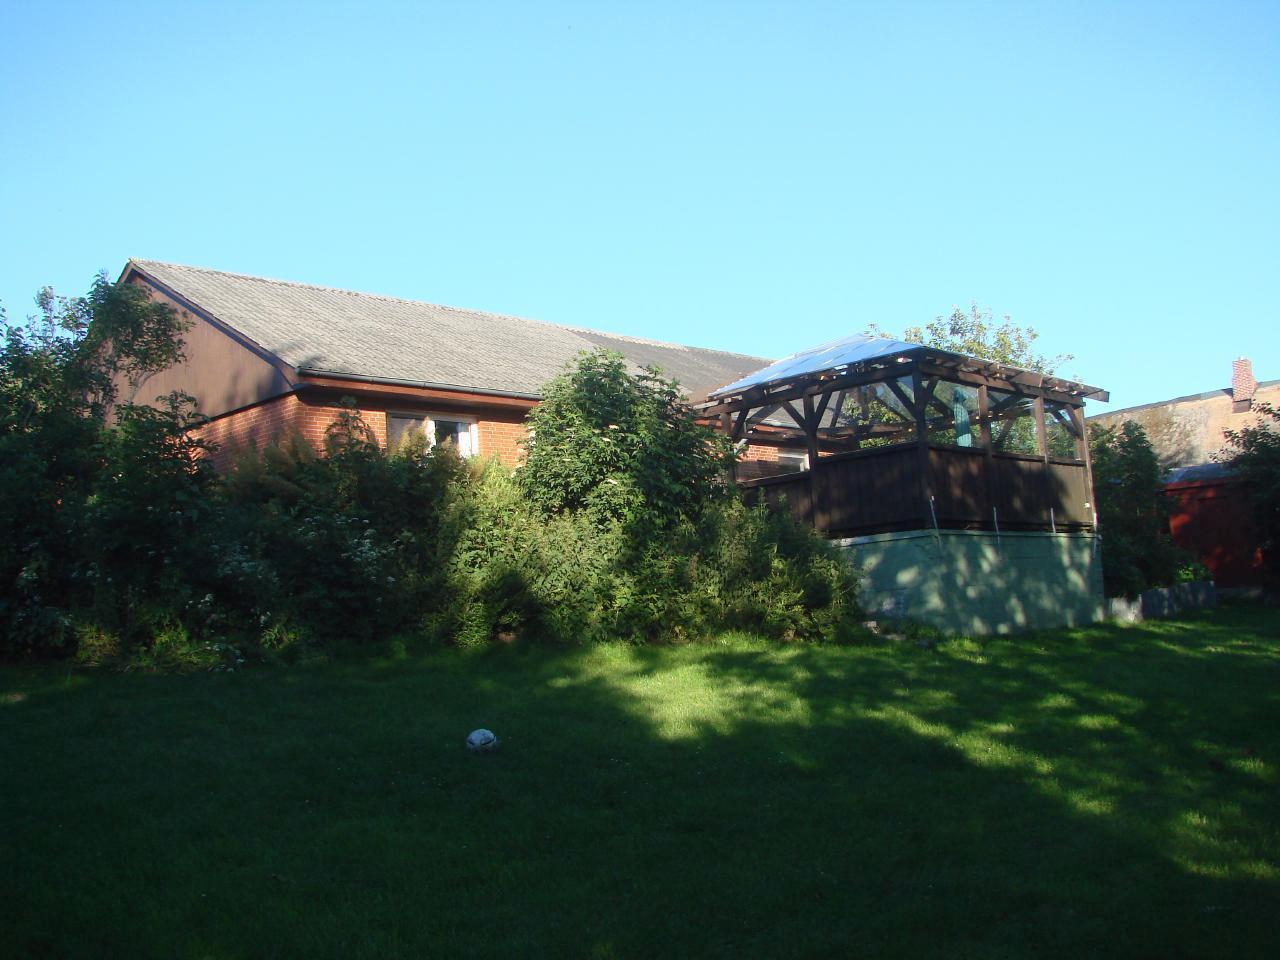 Ferienhaus in Mühlendeich mit Großem Ga  in Schleswig Holstein